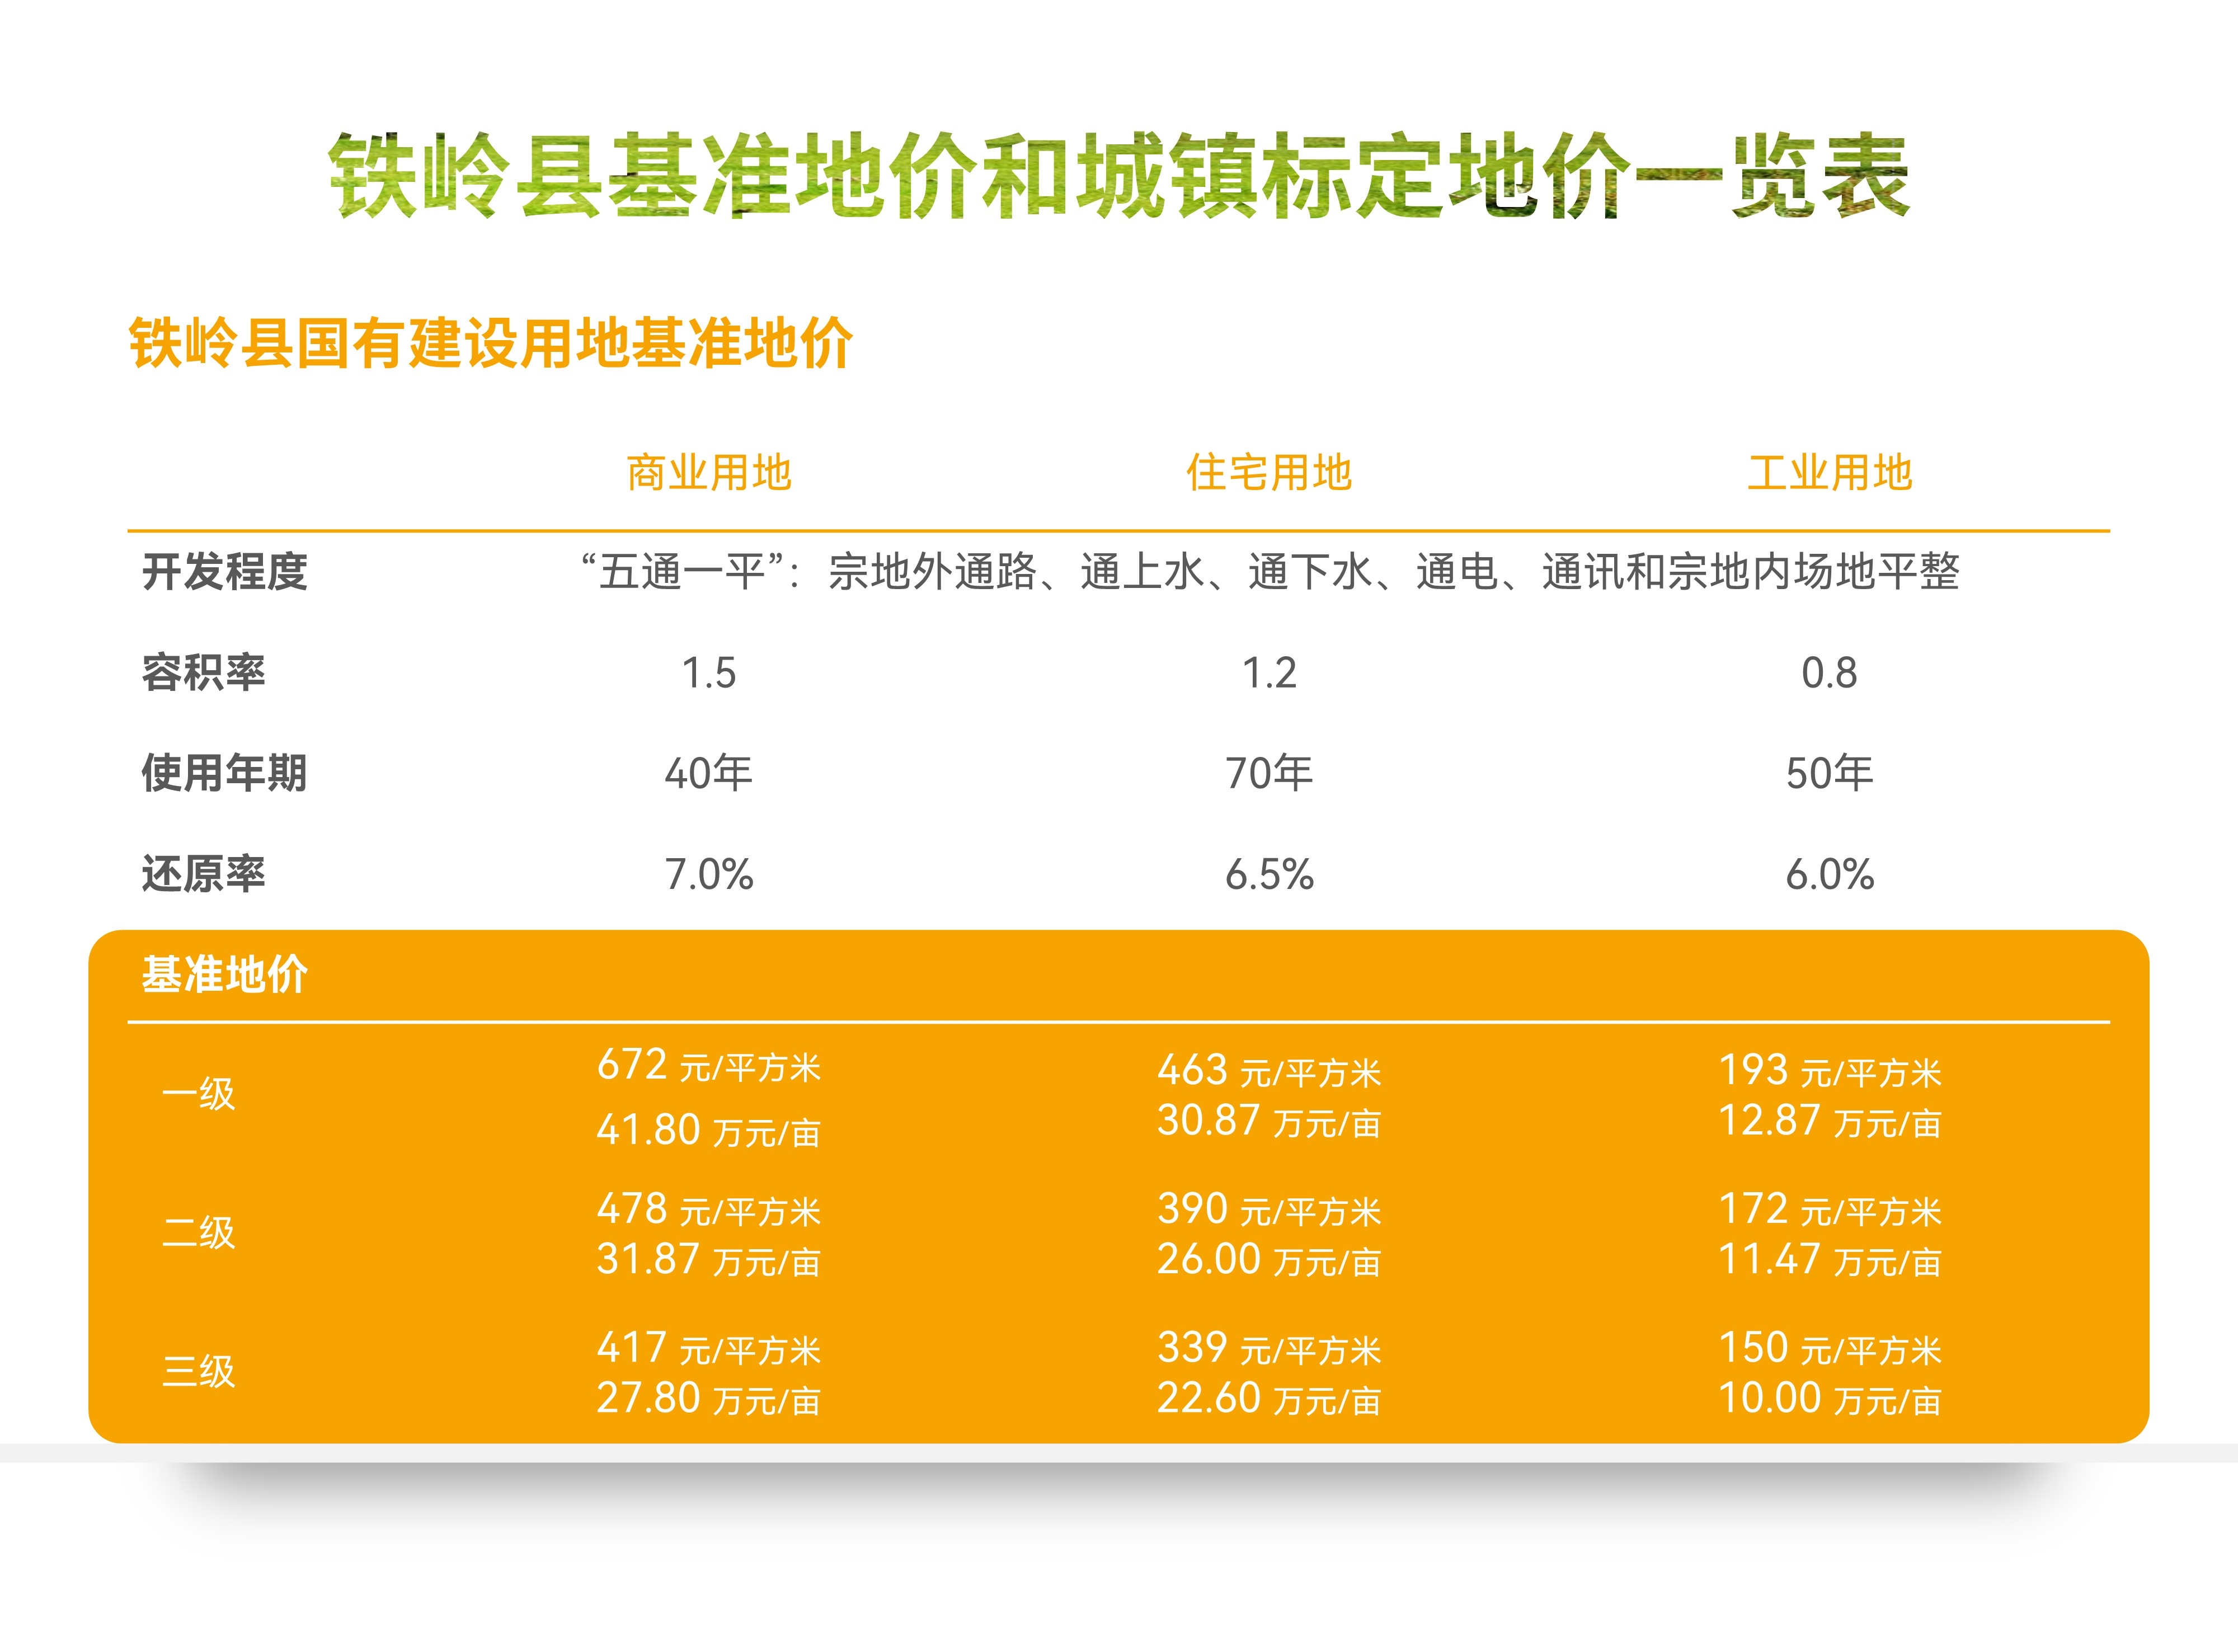 【图解】铁岭县基准地价和城镇标定地价一览表